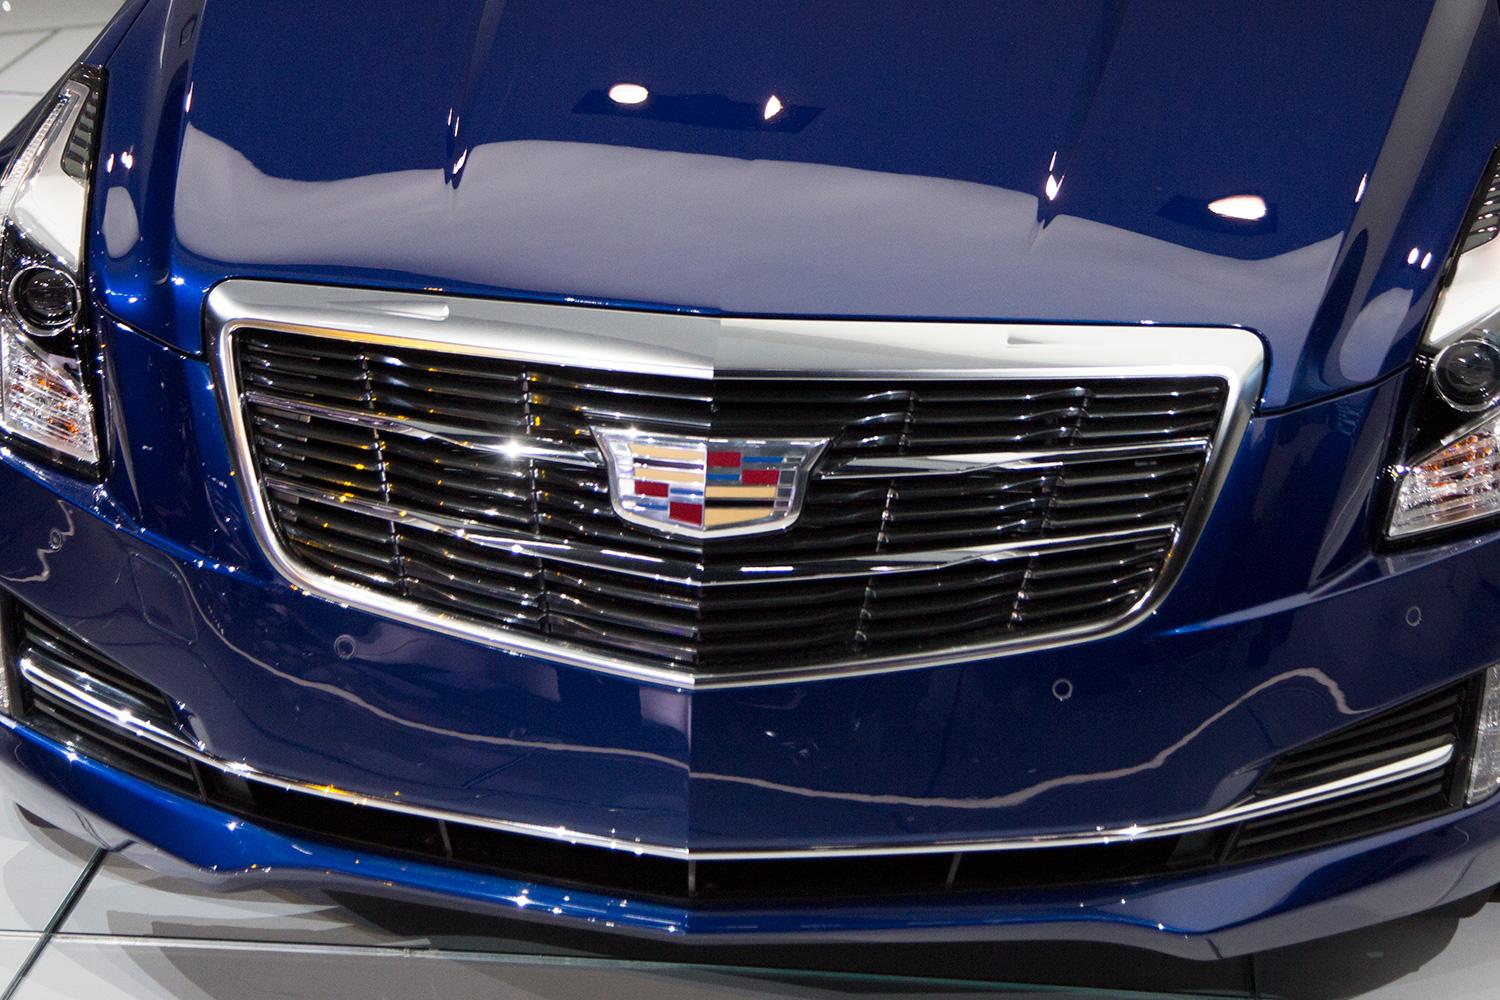 2015 Cadillac ATS Coupe grill macro